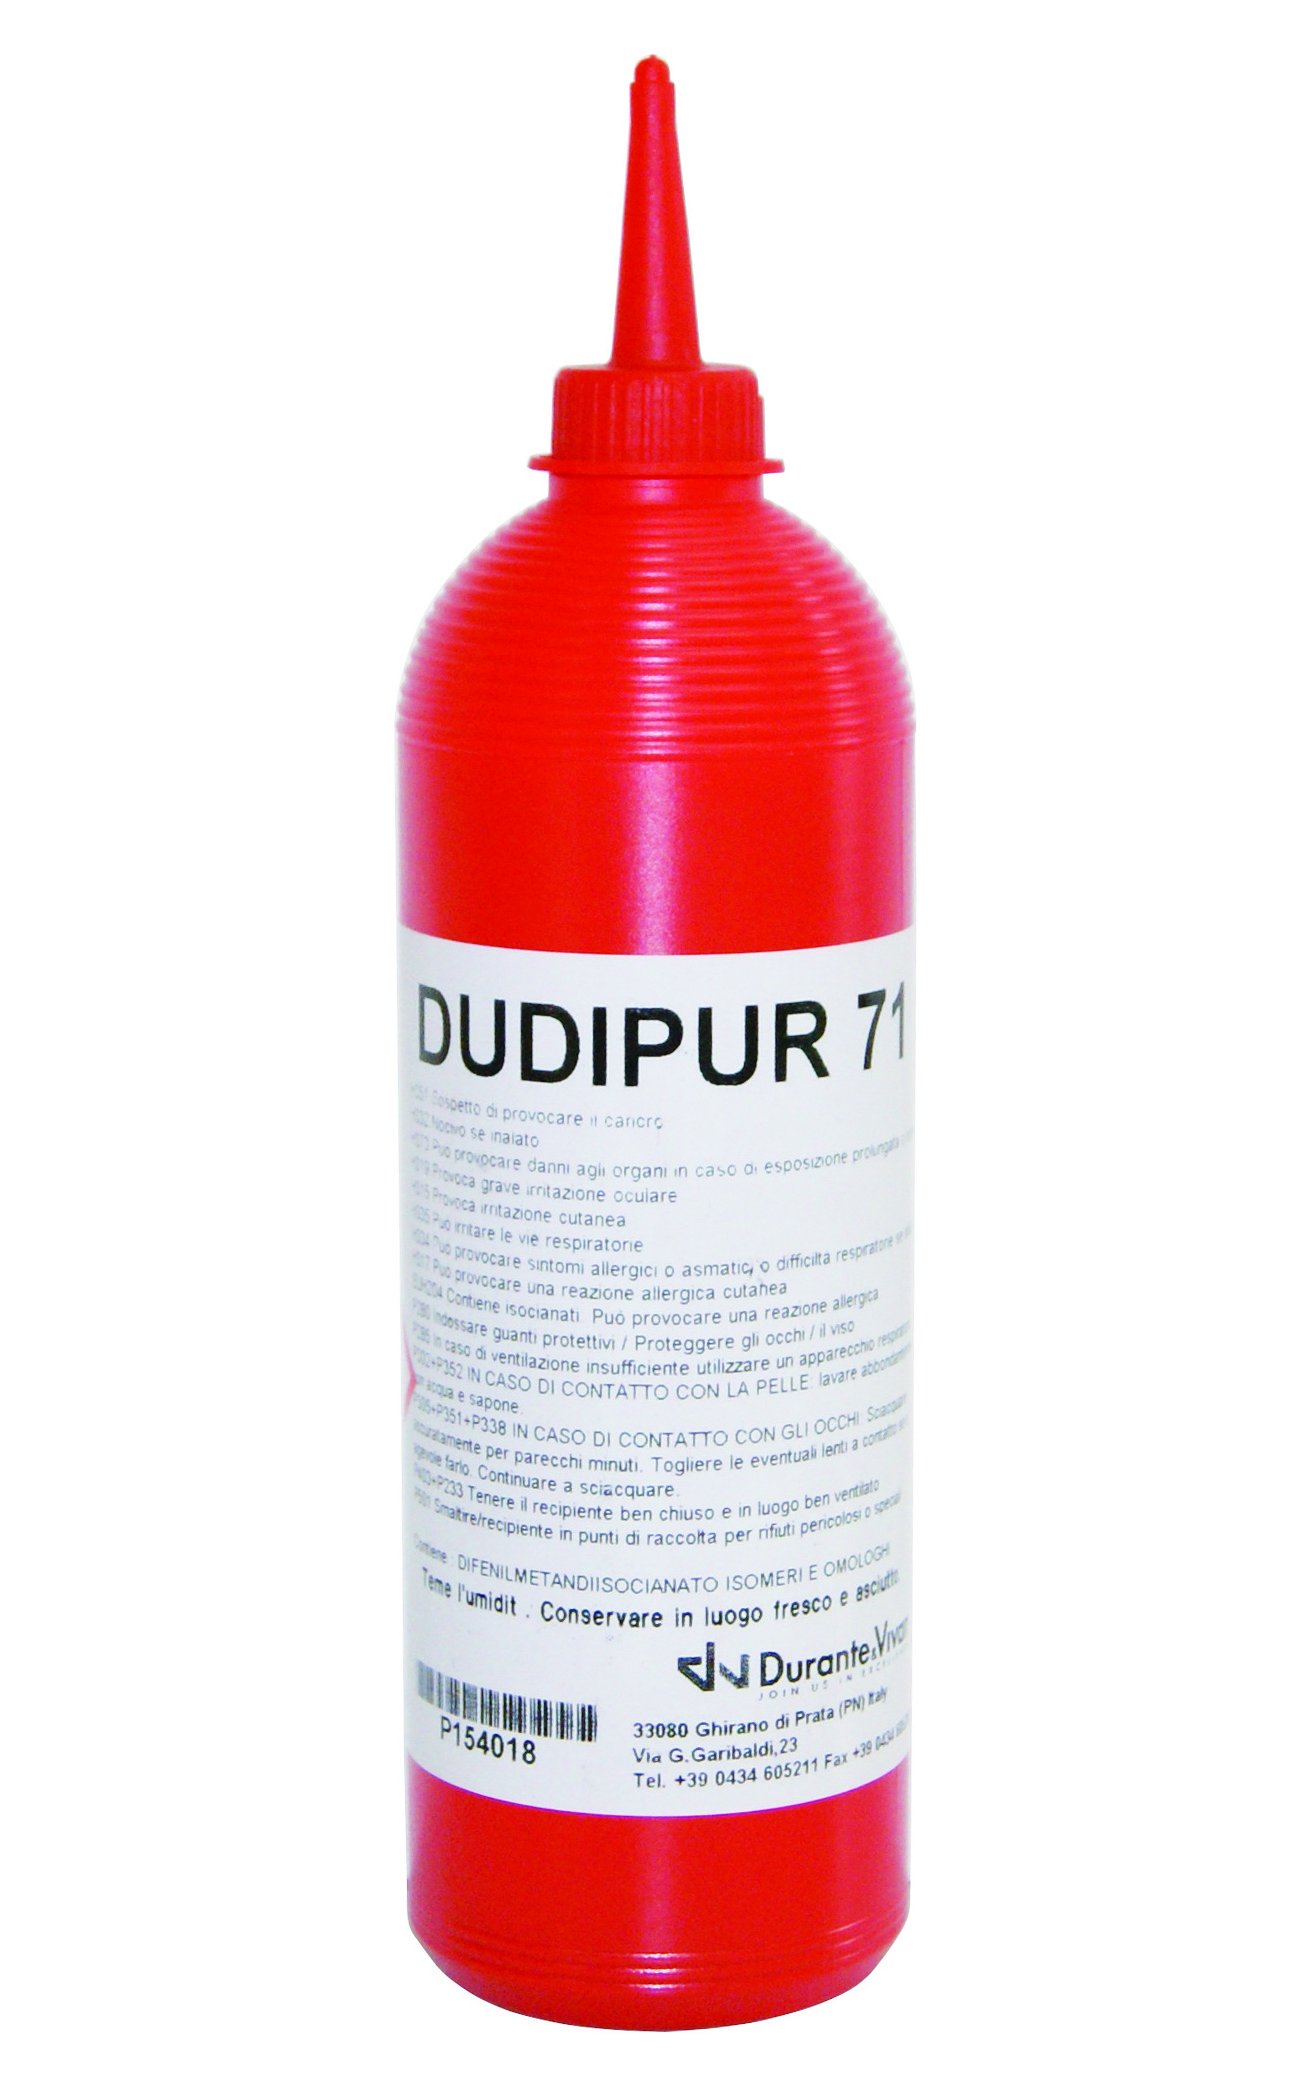 Dudipur 71 adesivo poliuretanico 500 g